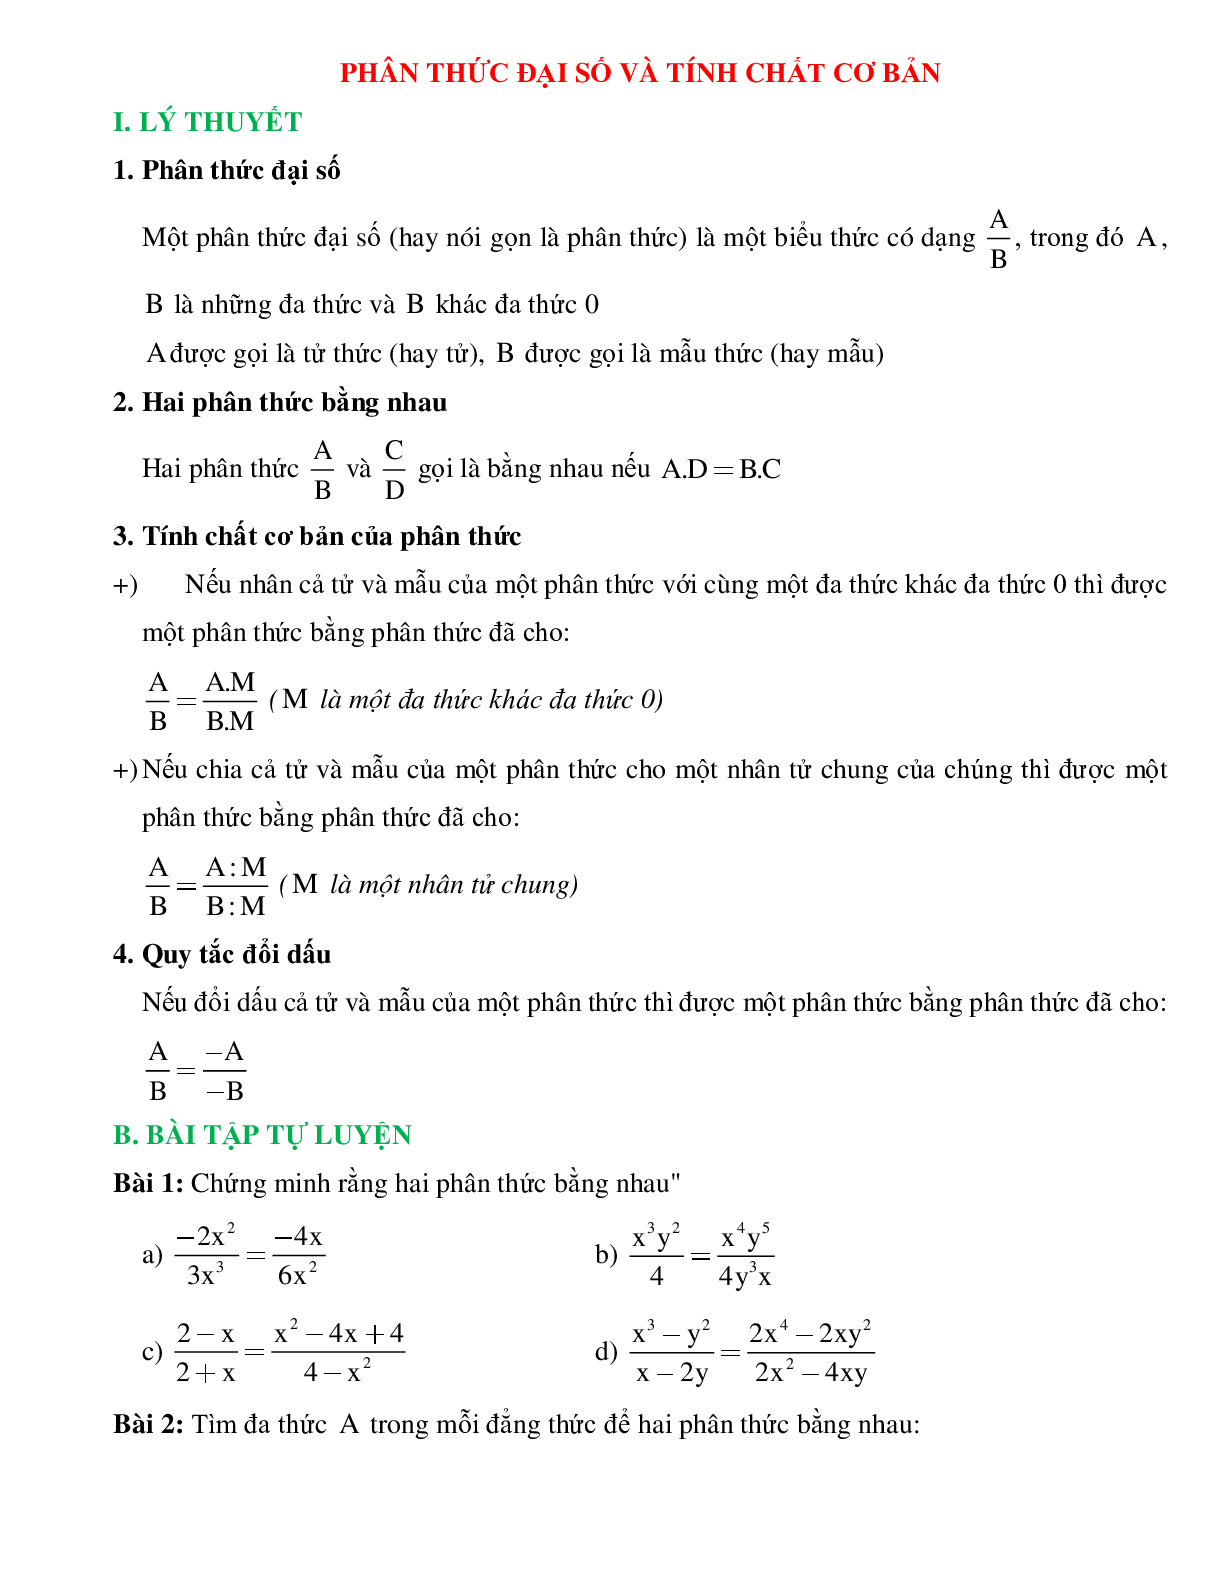 Phân thức đại số và tính chất cơ bản (trang 1)